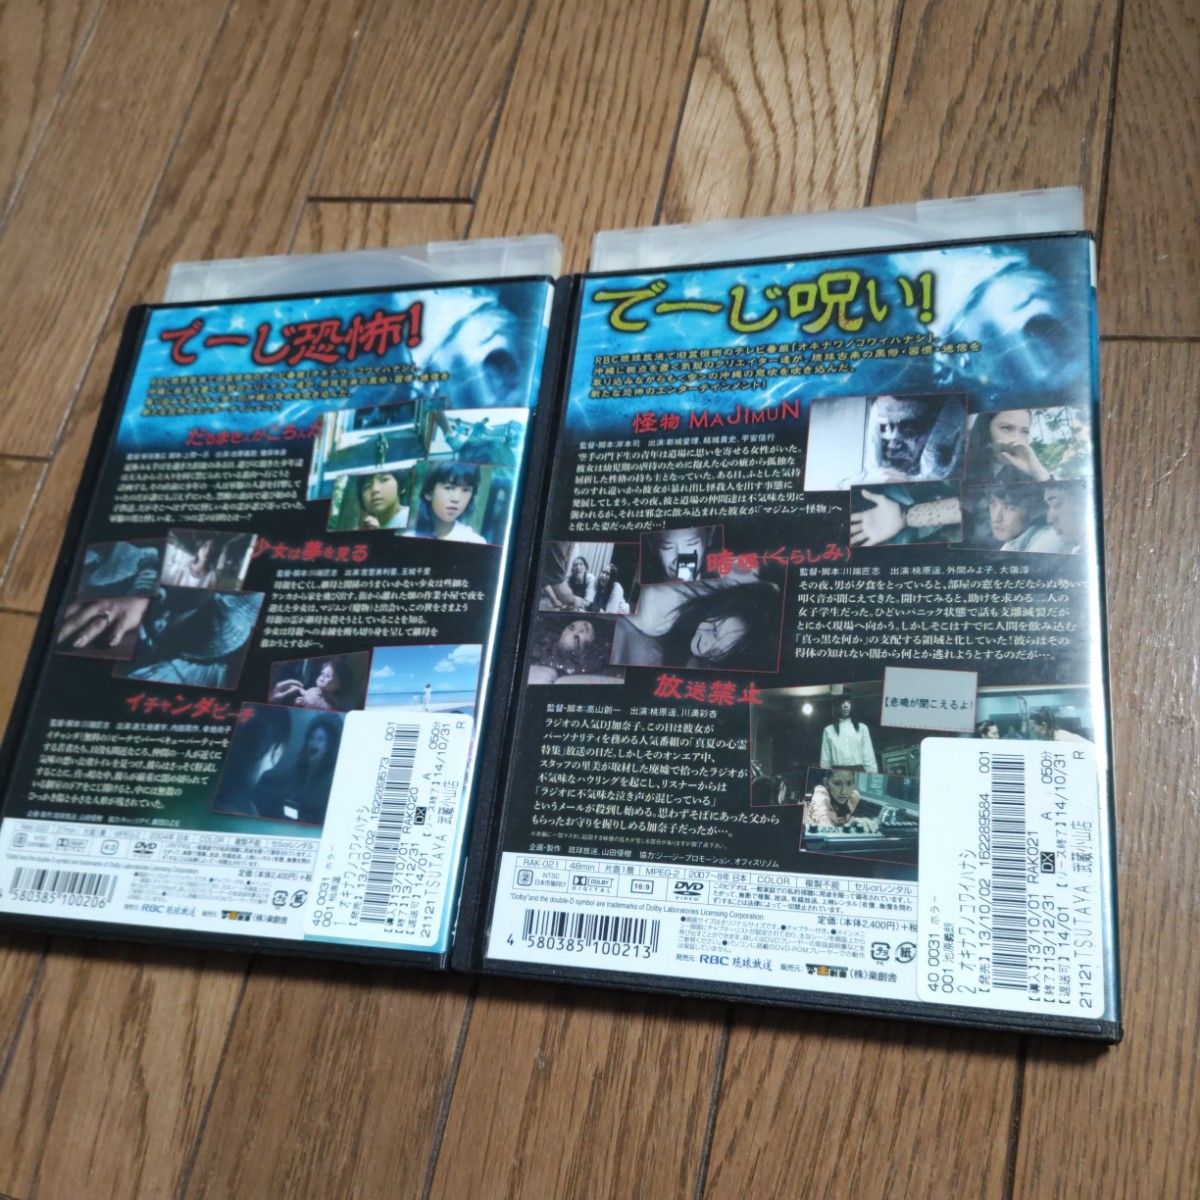 オキナワノコワイハナシ、dvd、2枚セット